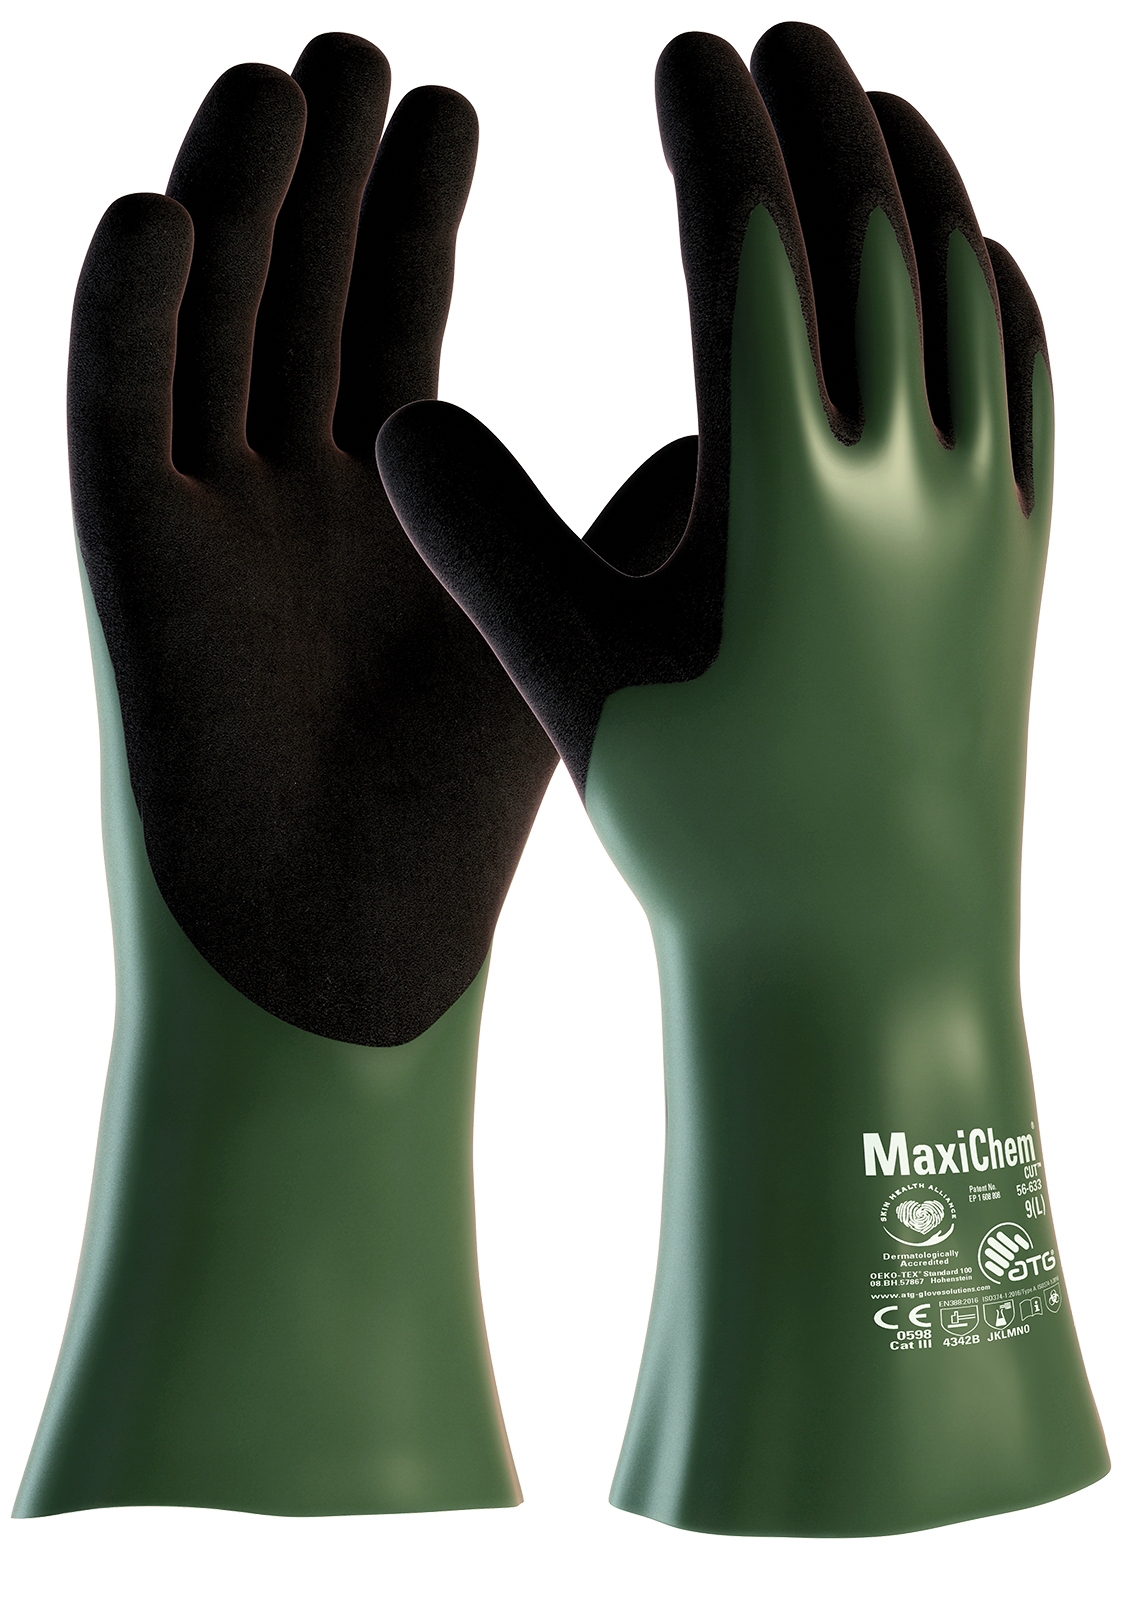 MaxiChem® Cut™ Chemikalienschutz-Handschuhe (56-633) in Grün, Größe 9